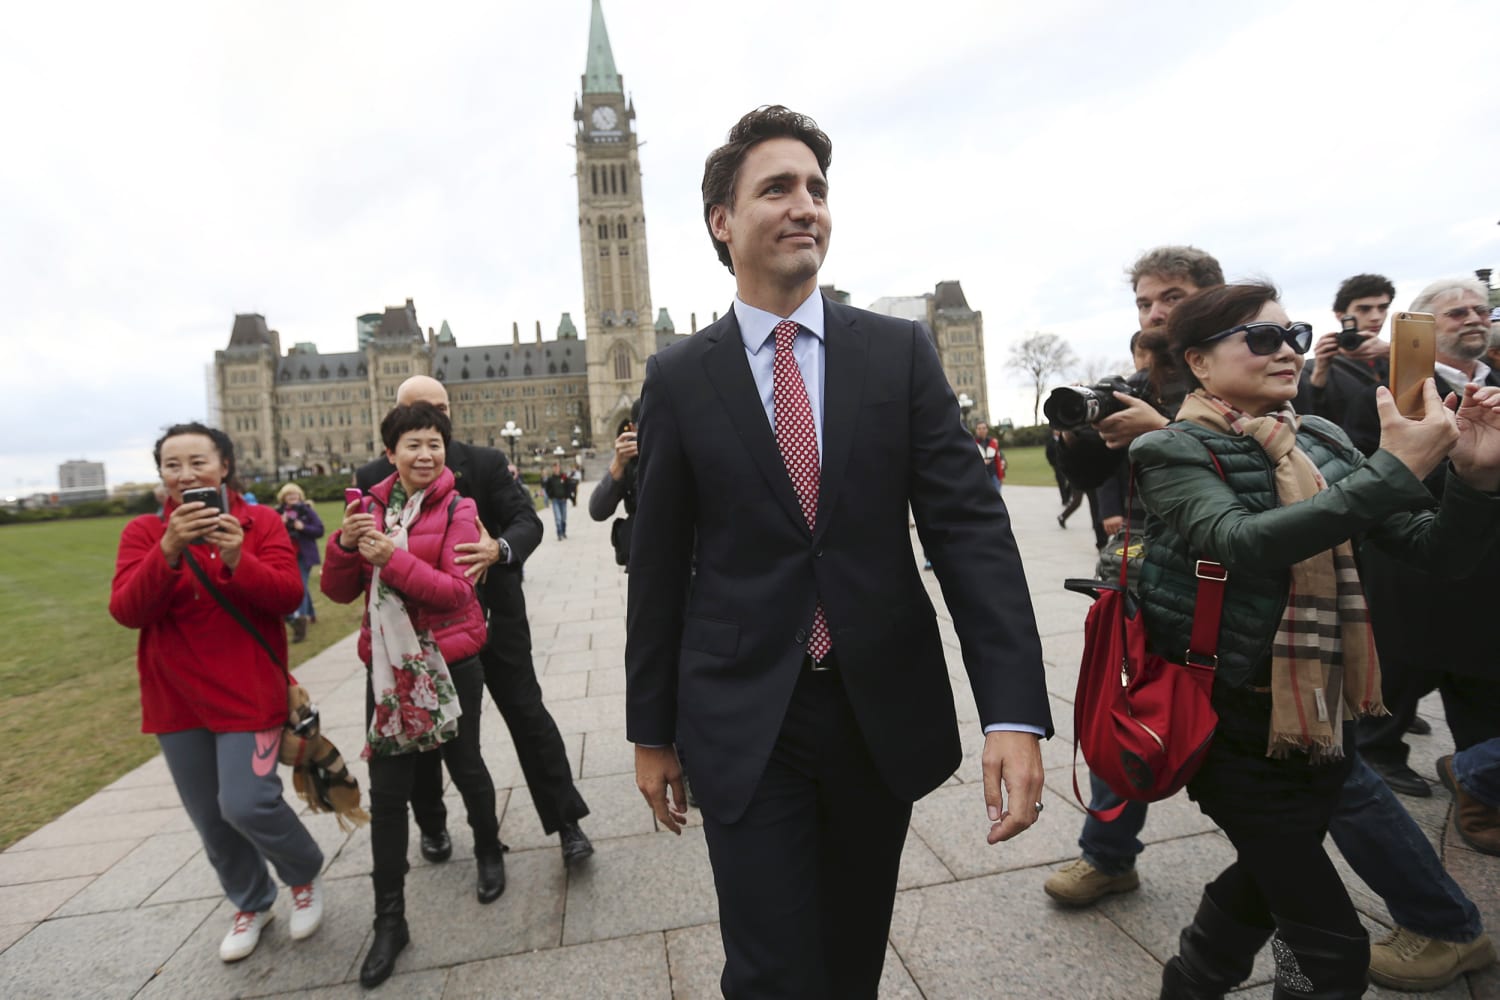 Canadian Prime Minister Justin Trudeau Appoints Gender-Equal Cabinet